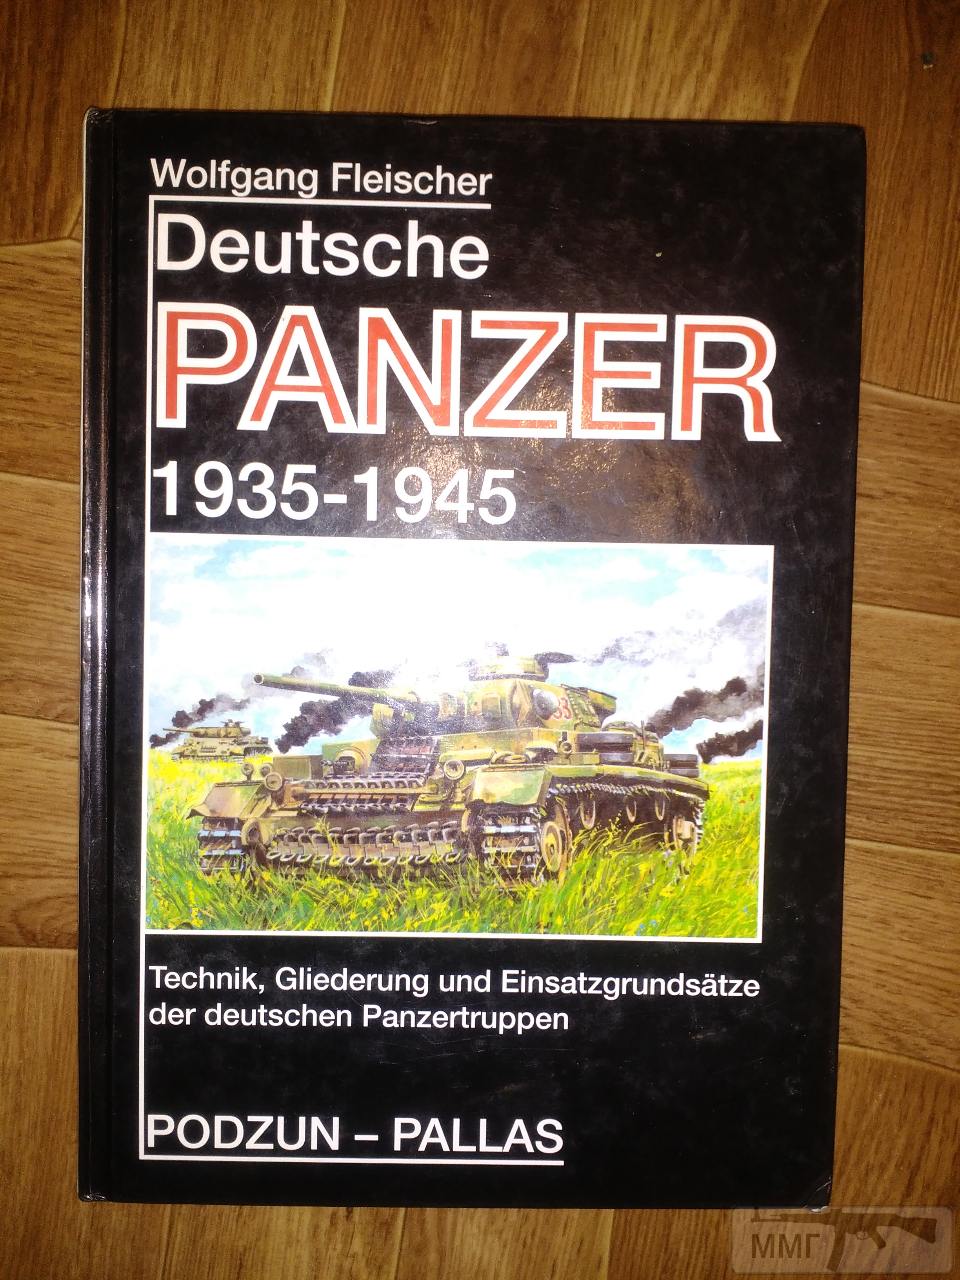 21209 - Книга"Deutsche panzer 1935-1945"